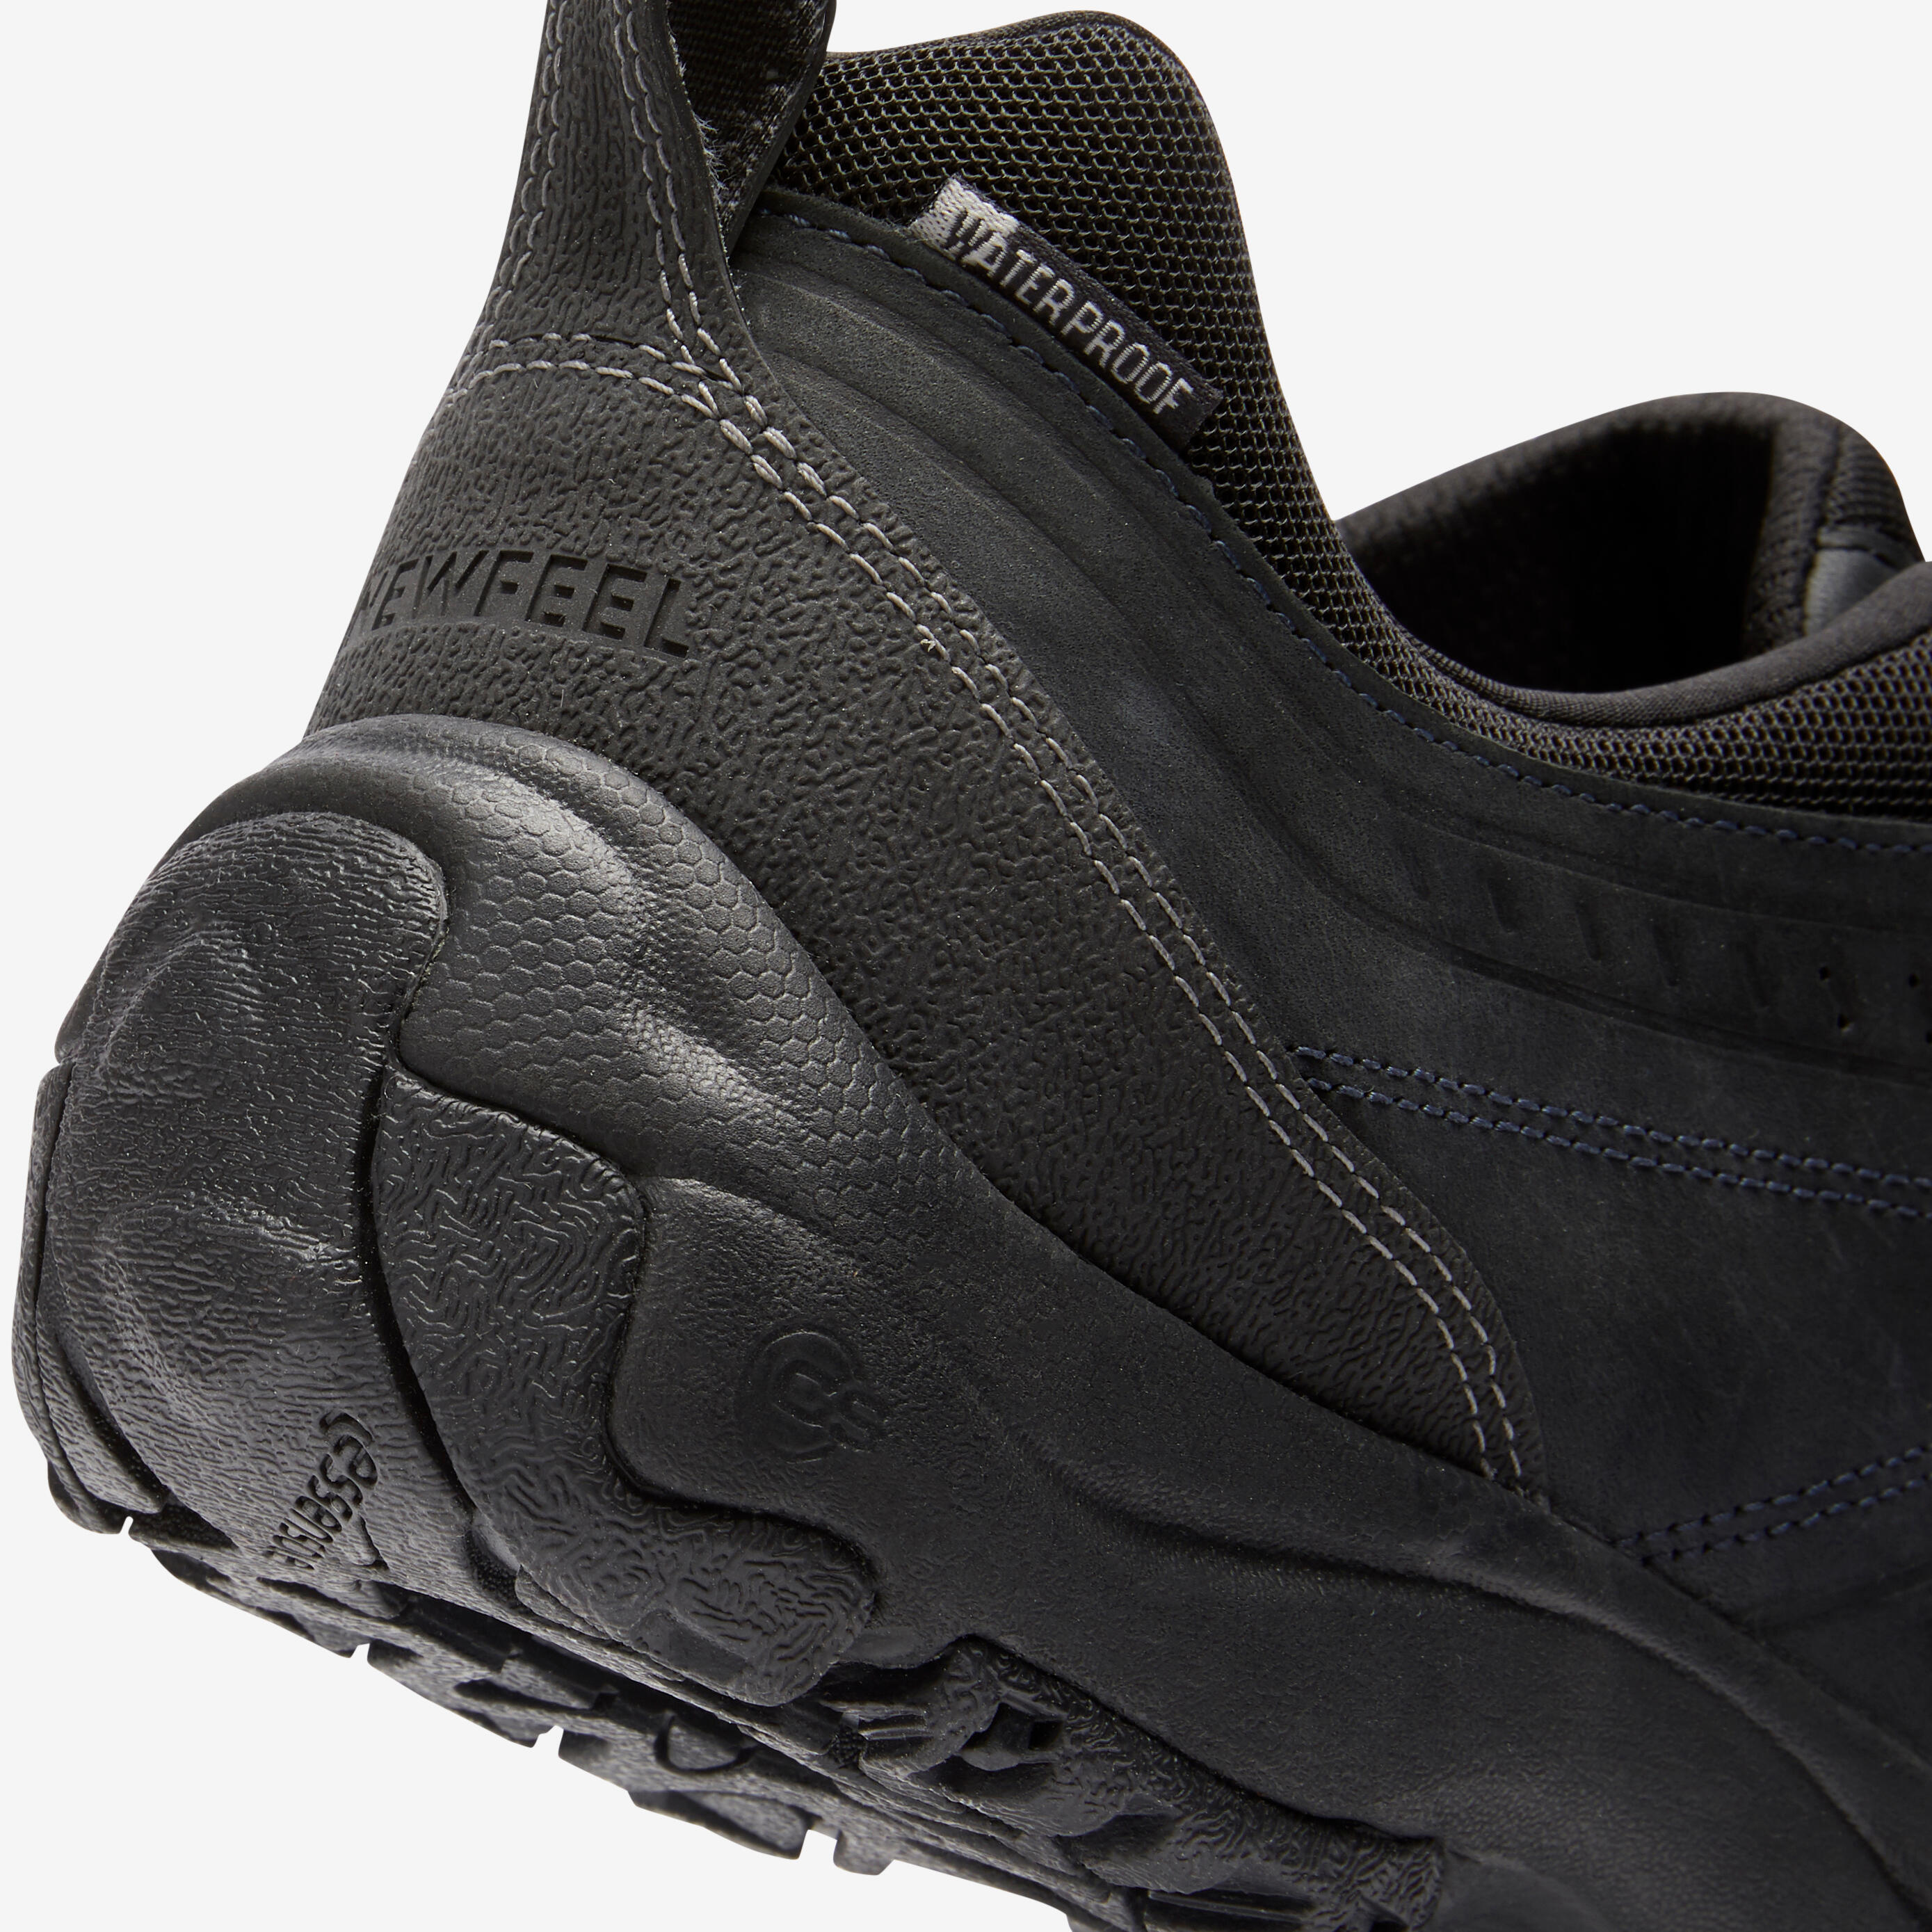 Nakuru Waterproof Men's Urban Waterproof Walking Shoes - Black Leather 7/8